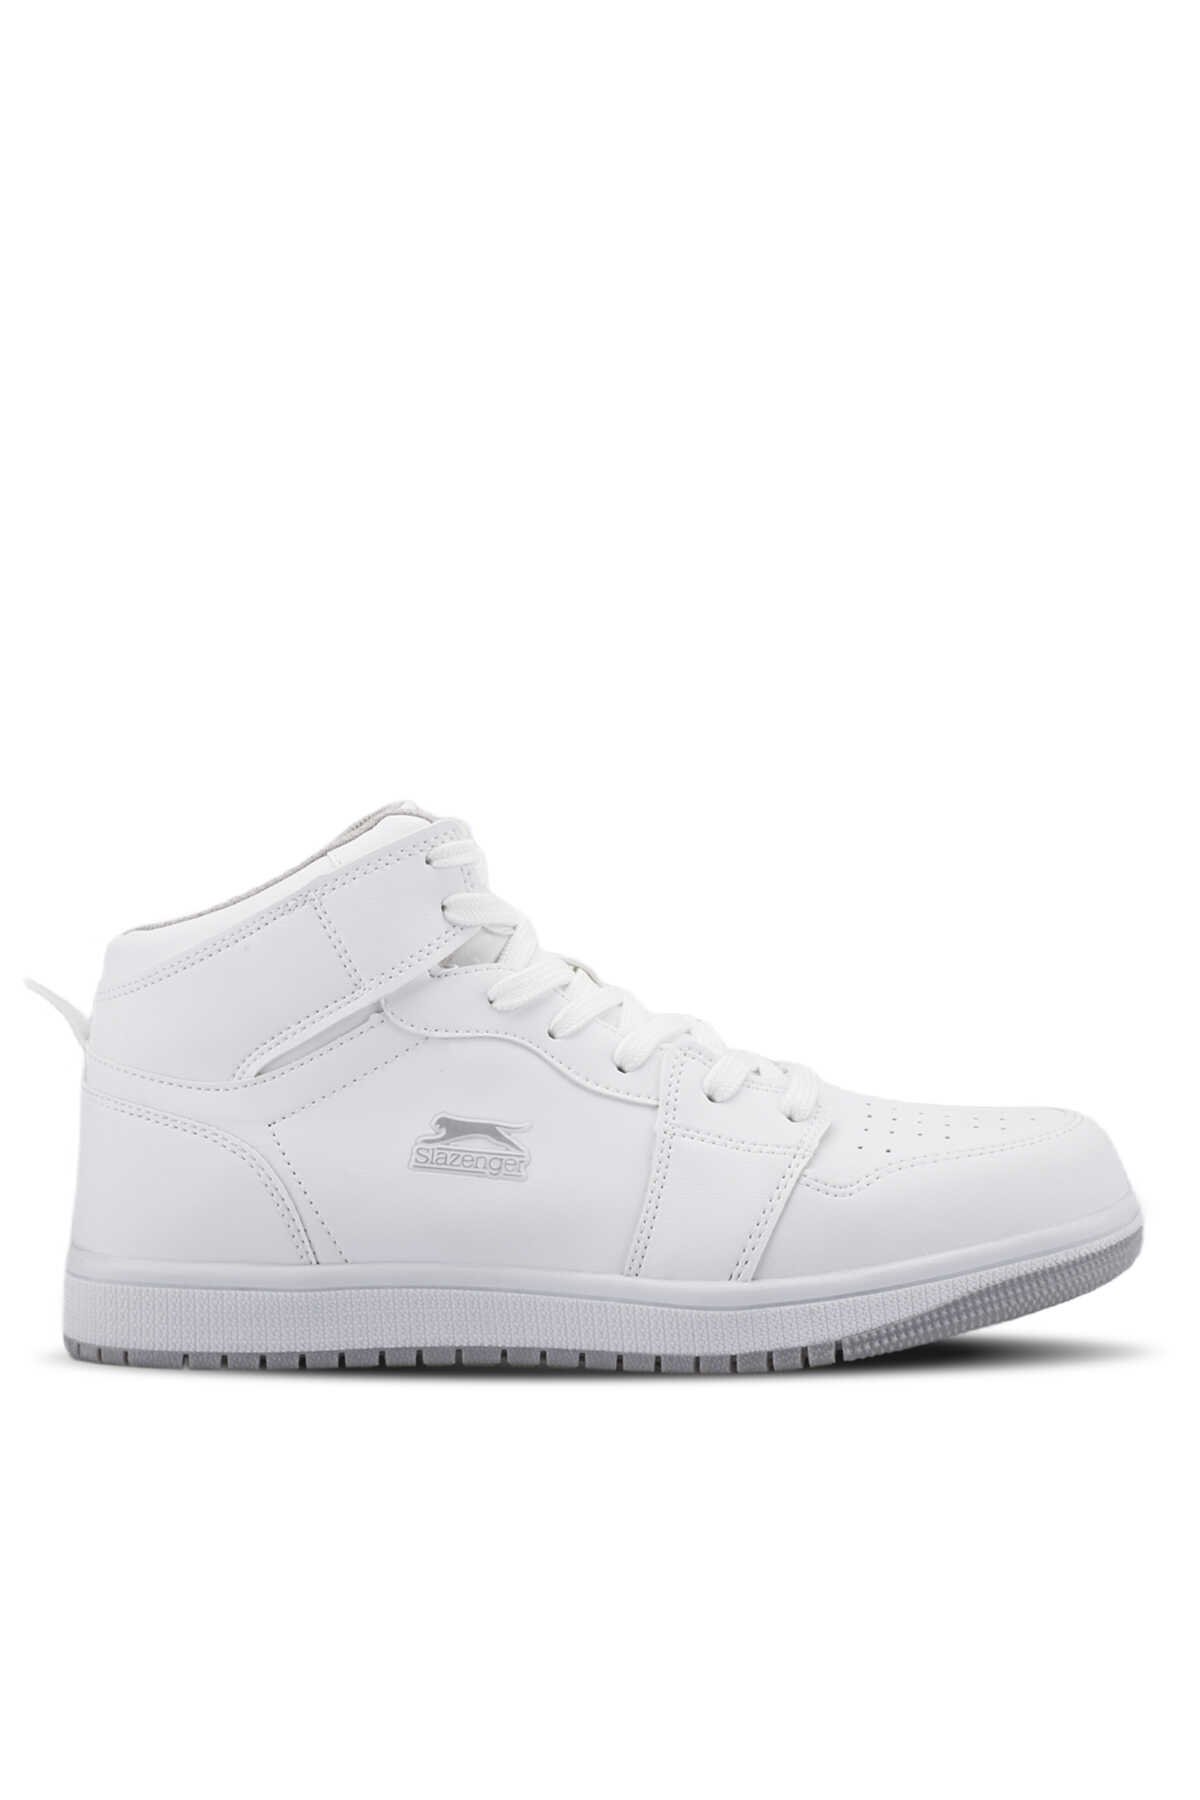 Slazenger - Slazenger LABOR HIGH Sneaker Erkek Ayakkabı Beyaz / Beyaz